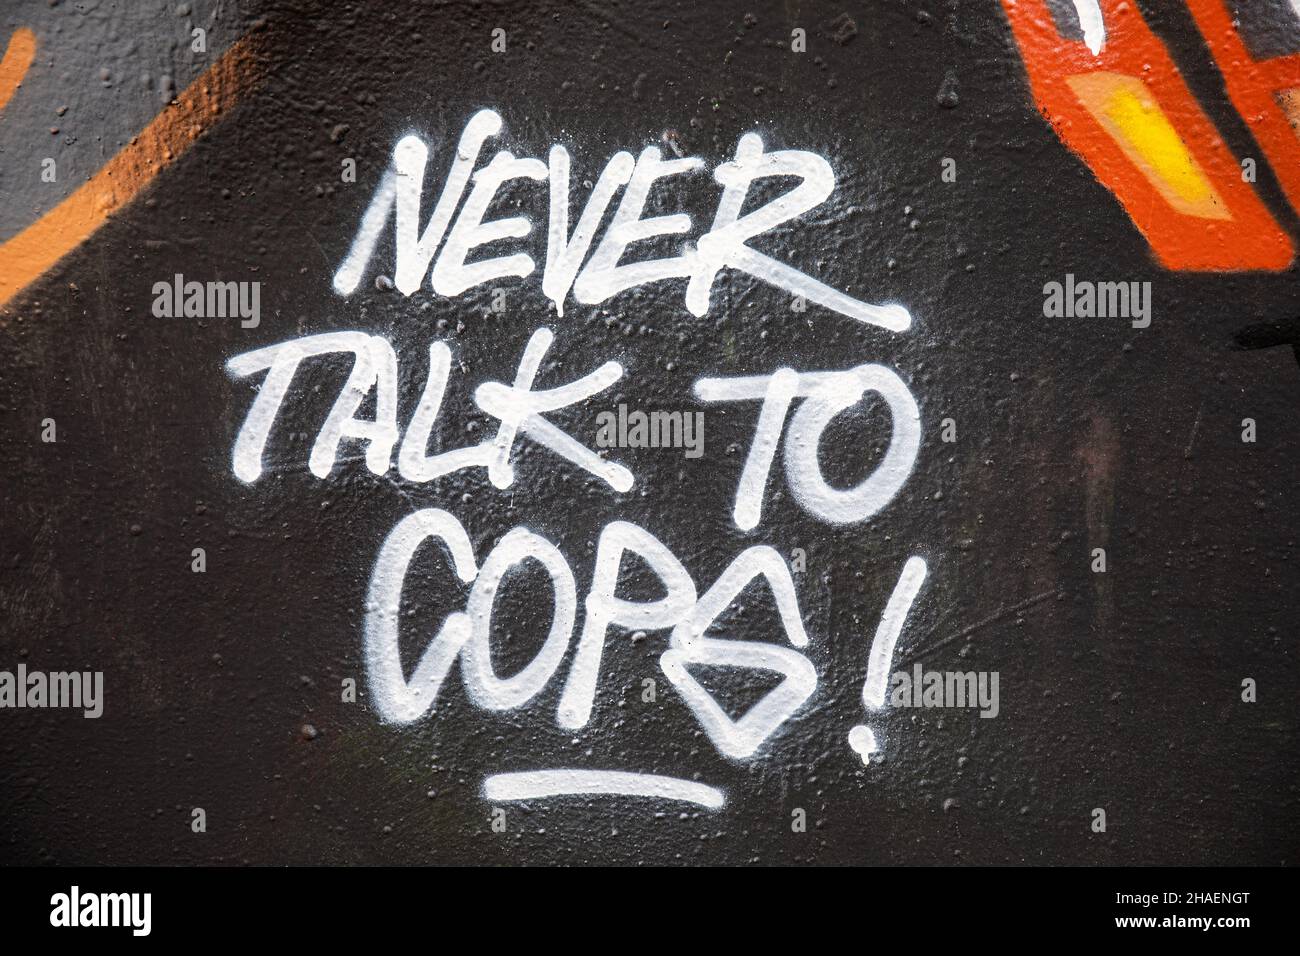 Never talk to cops! Graffiti. Stock Photo